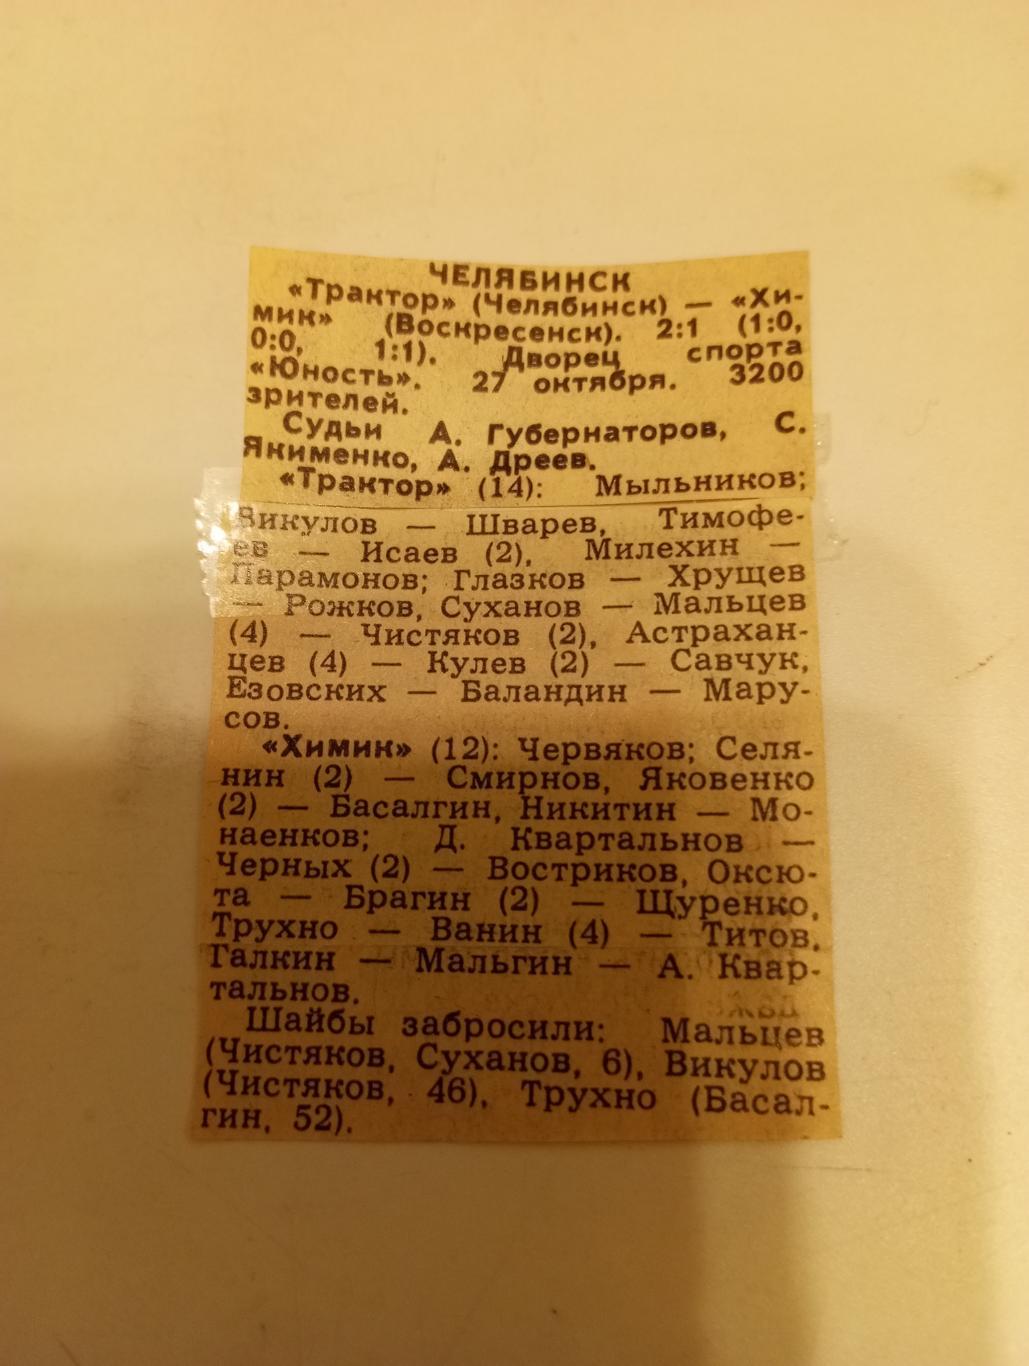 Трактор (Челябинск)- Химик (Воскресенск). 27.10.1988.Счёт (2-1)